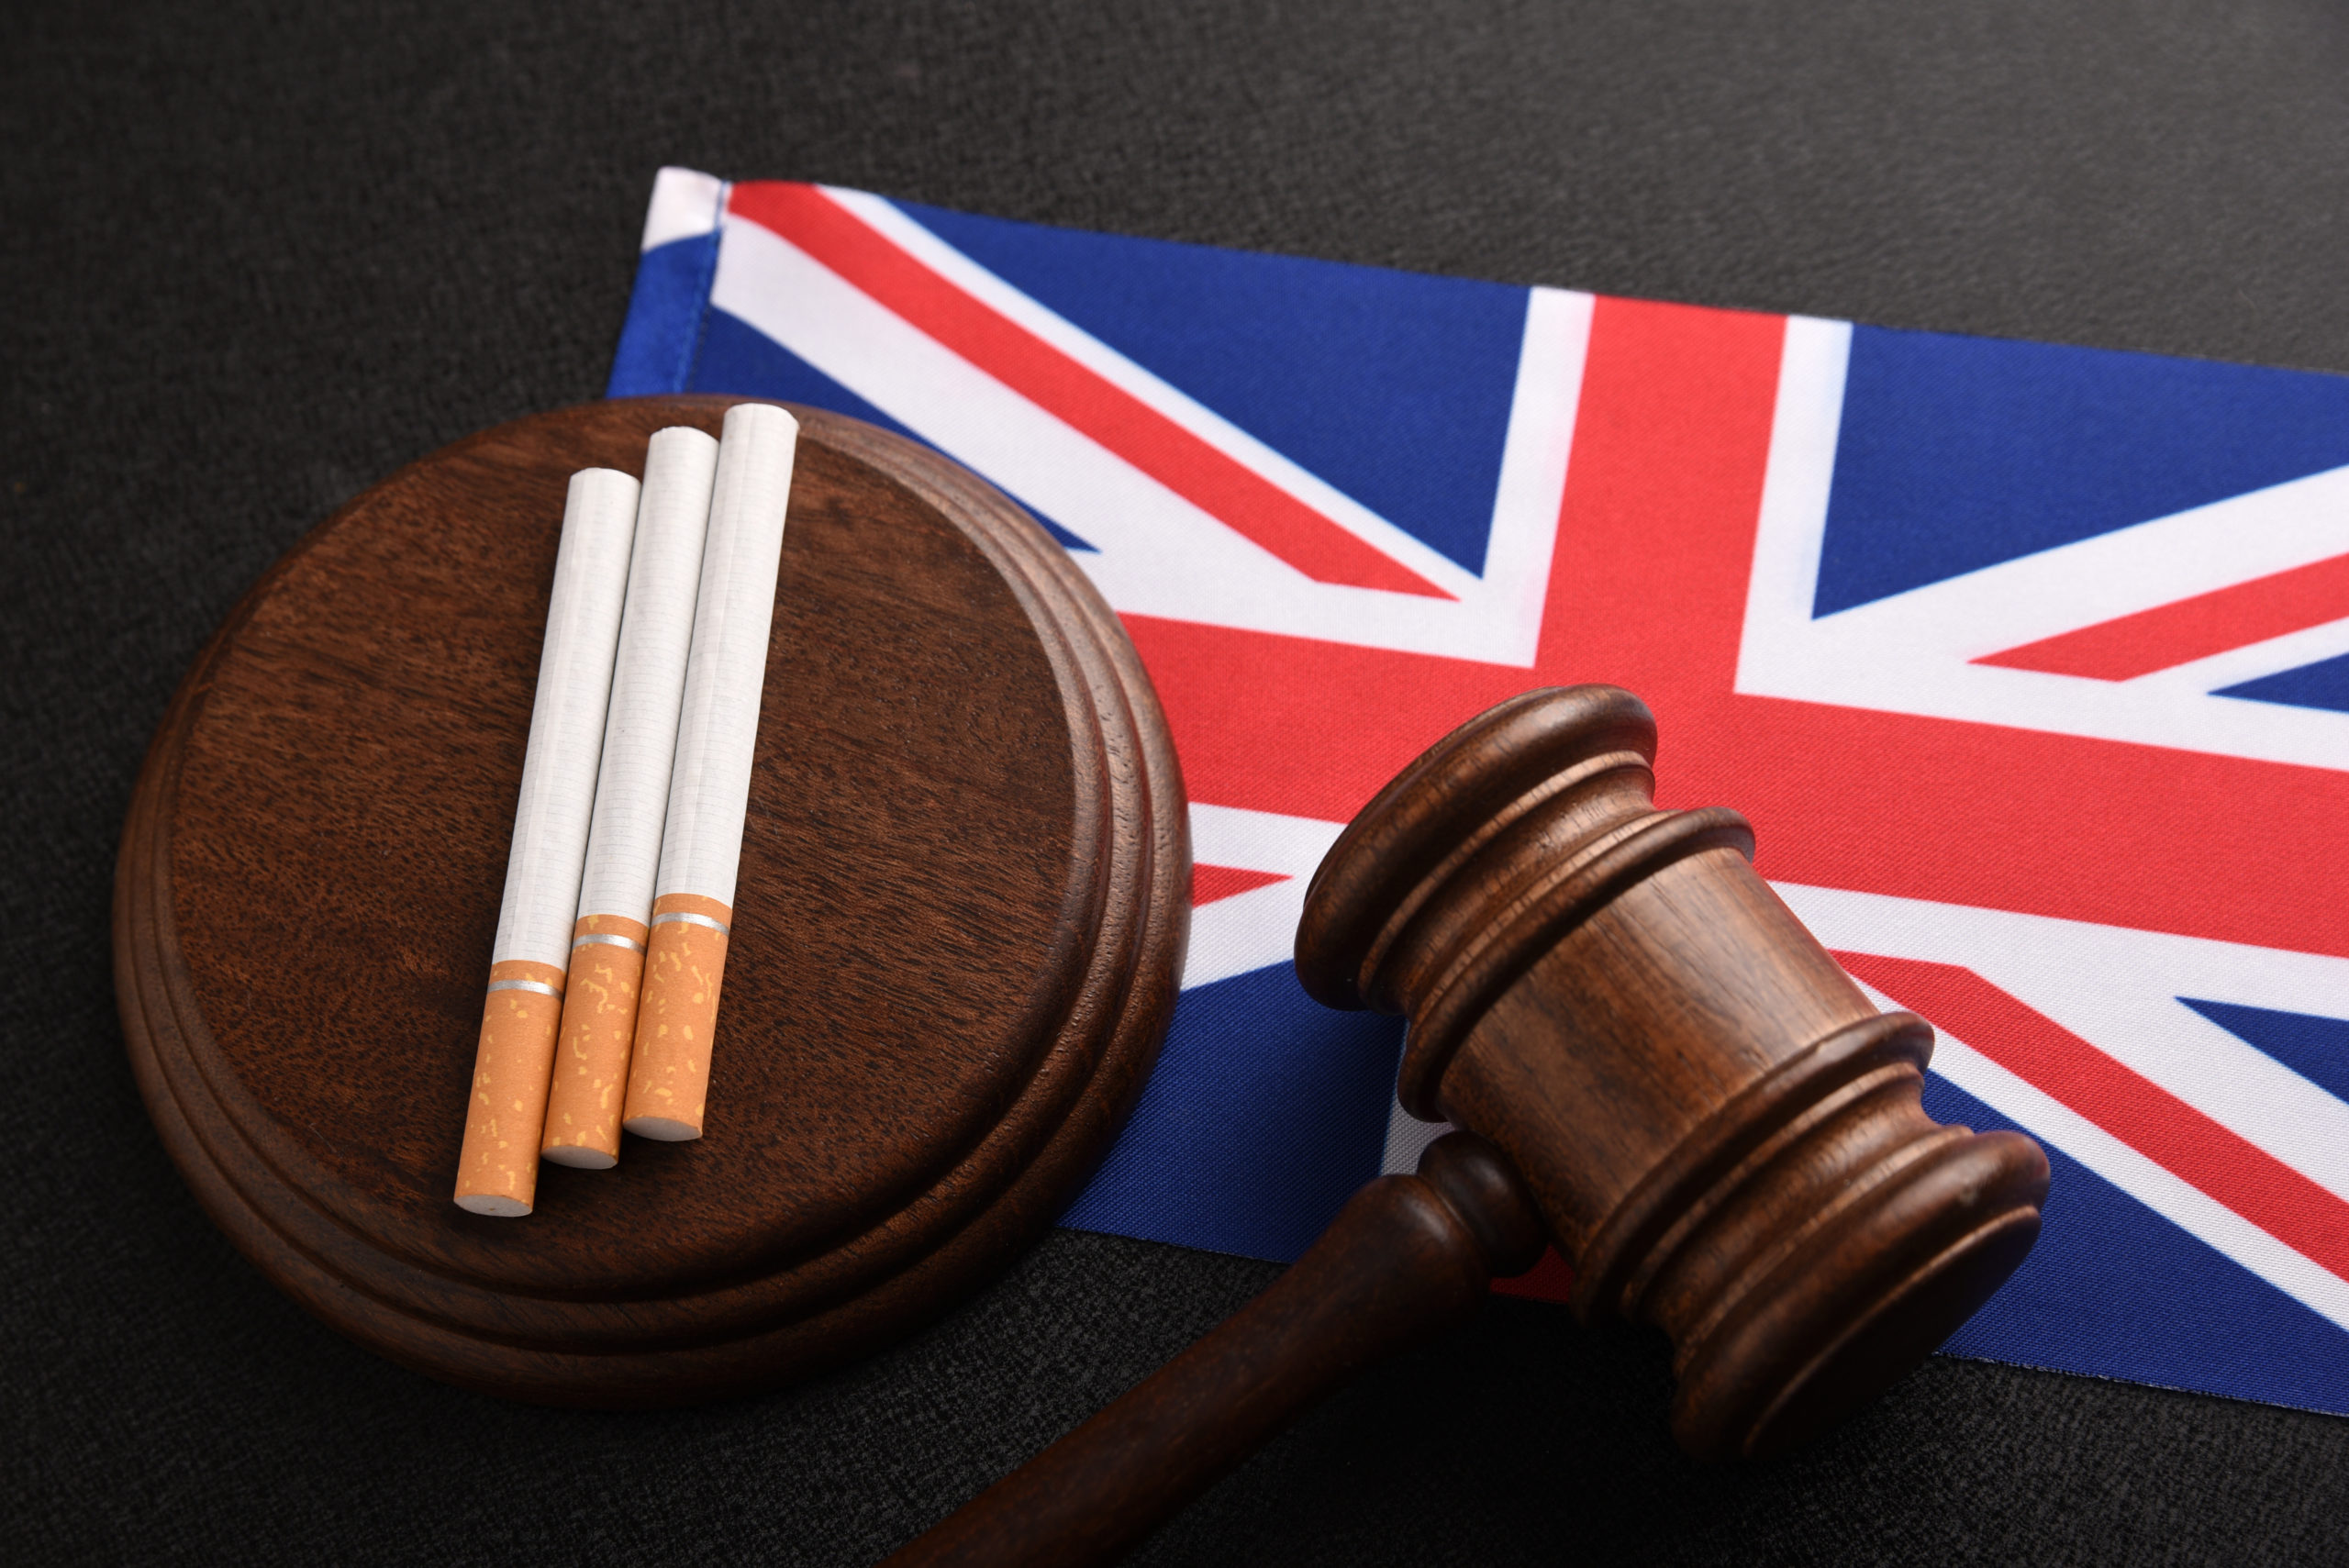 Tobacco law in UK